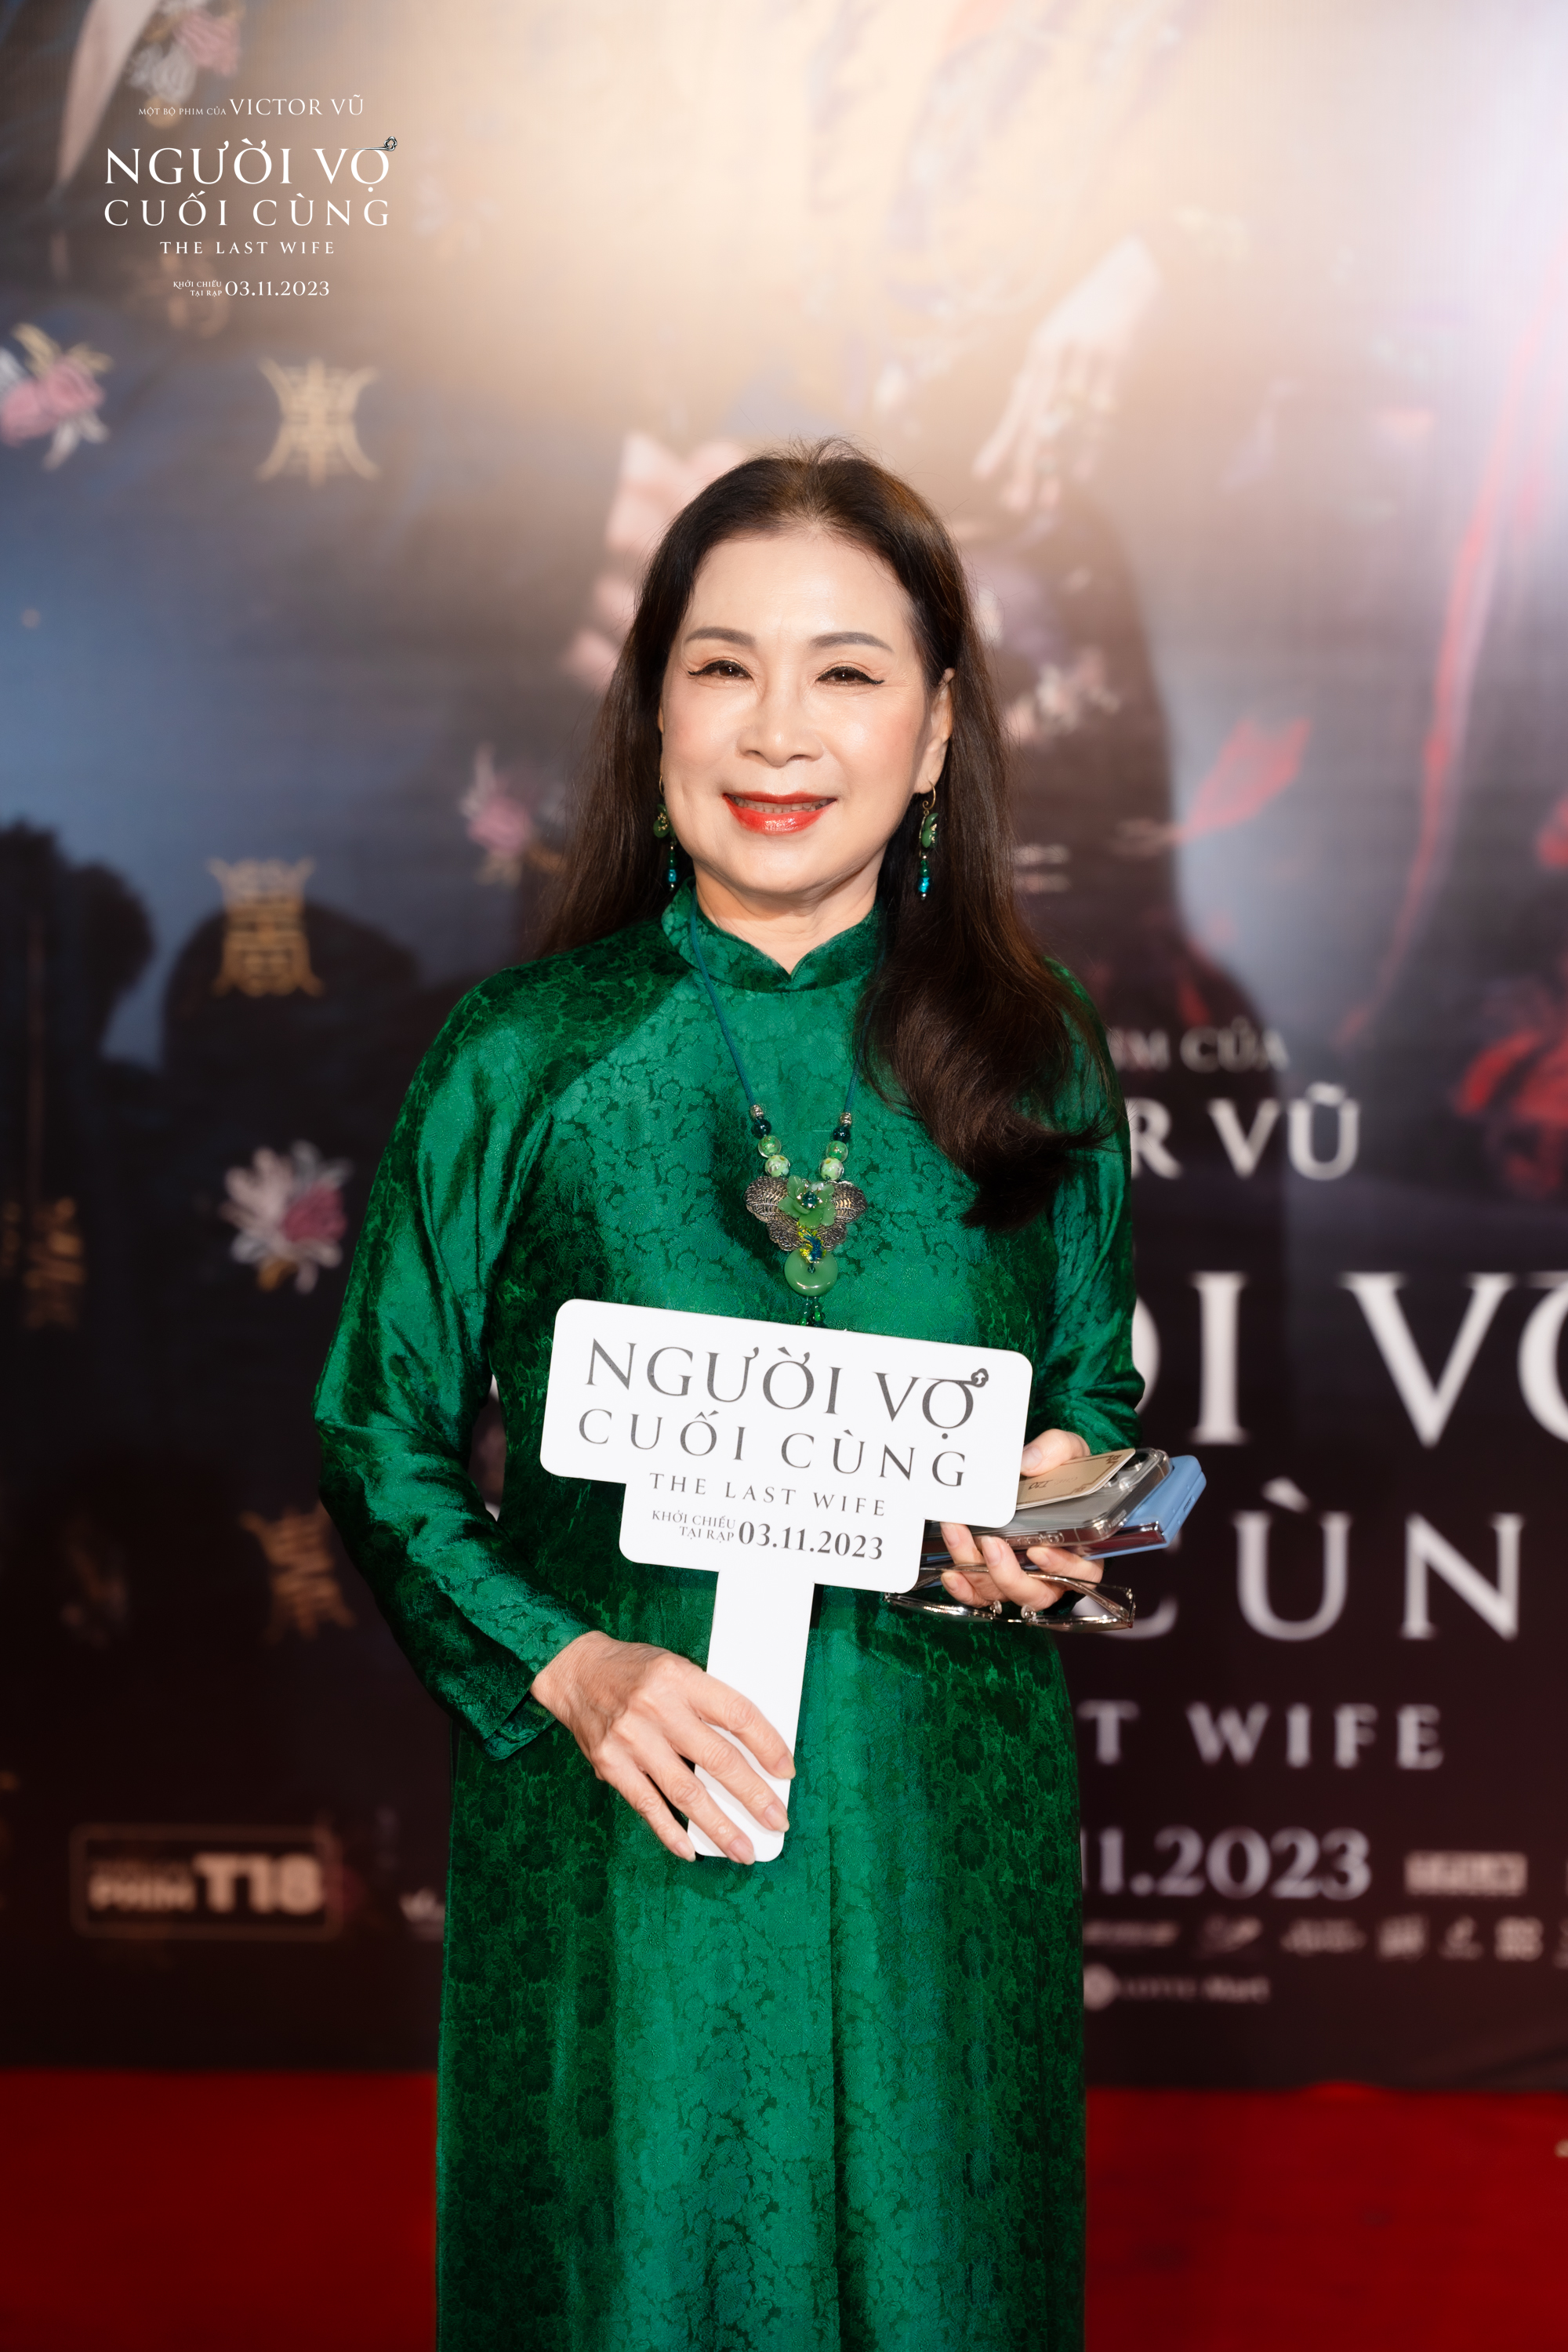 Showbiz Việt tề tựu chúc mừng phim mới của Victor Vũ - Ảnh 13.